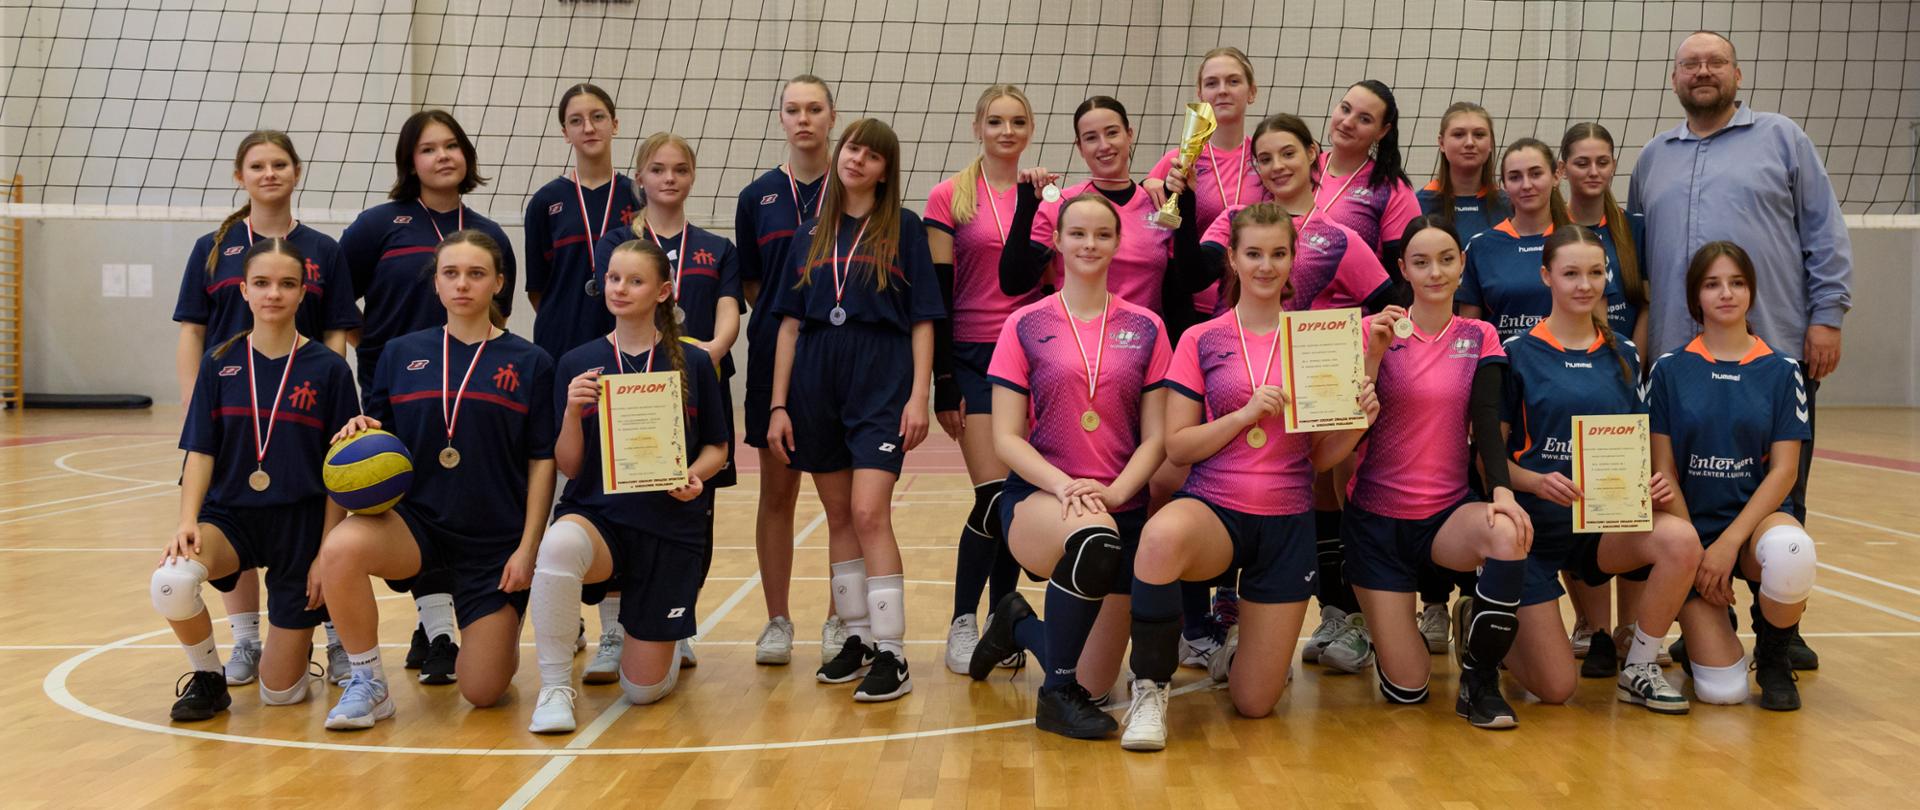 Fotografia grupowa na hali sportowej drużyn od lewej prezentuje się drużyna w granatowych koszulkach, następnie w różowych zwyciężczynie z pucharem oraz drużyna w ciemnoniebieskich koszulkach oraz przewodniczący Rady Powiatu Sokołowskiego.